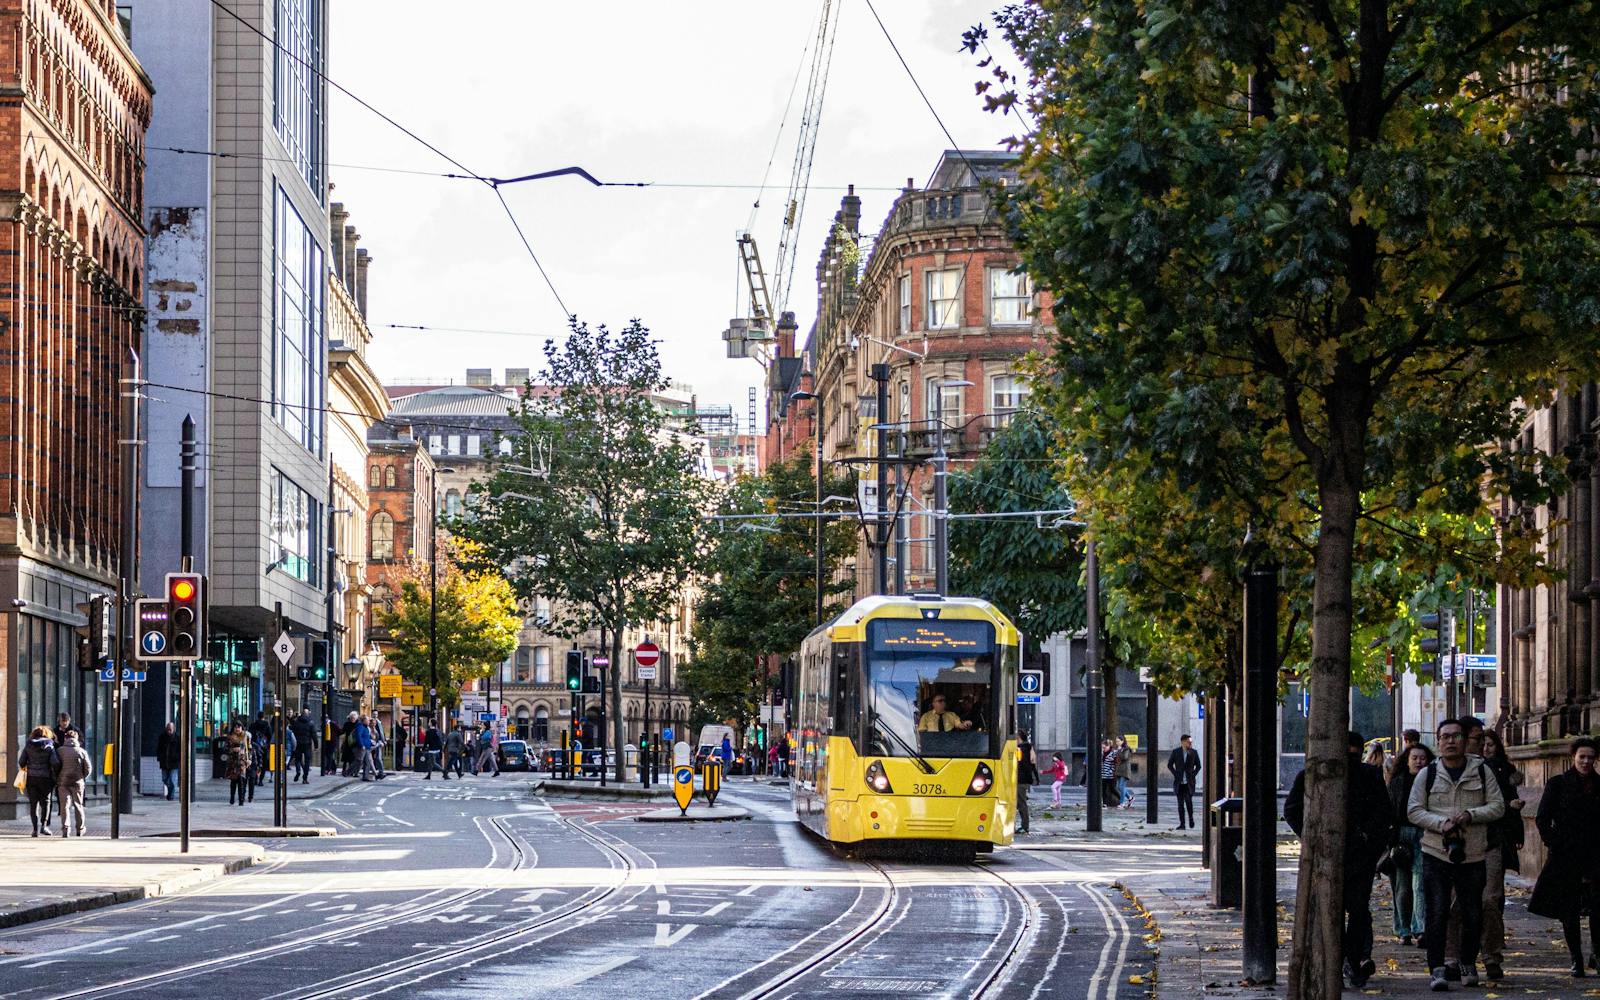 A tram in a city centre